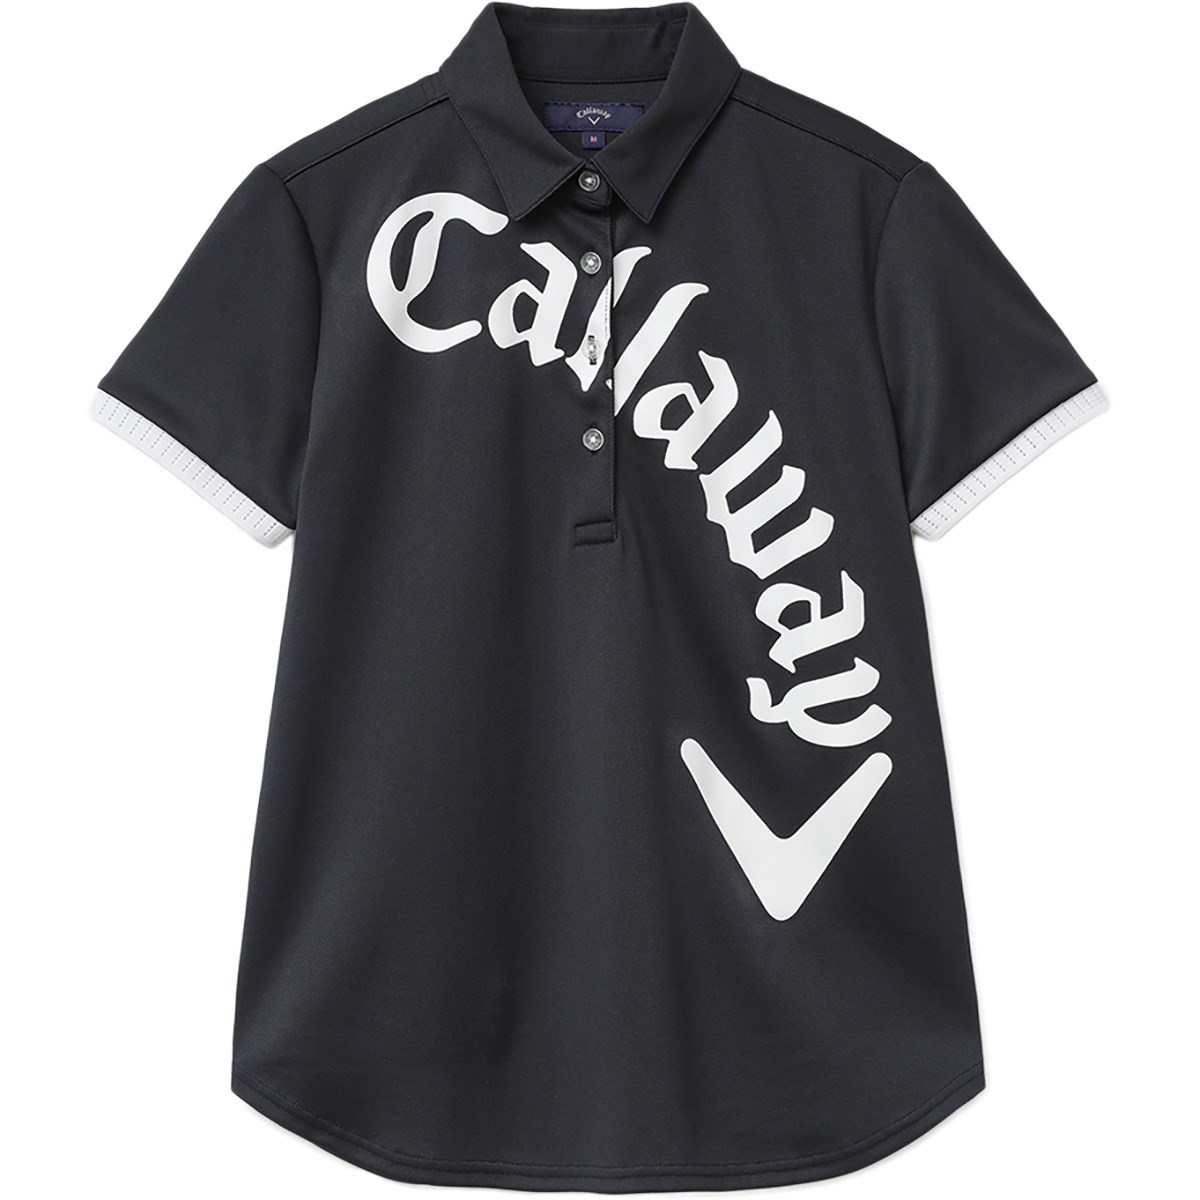 [アウトレット] [在庫限りのお買い得商品] キャロウェイゴルフ Callaway Golf ロゴプリントウインドセンサー鹿の子 半袖ポロシャツ ブラック 1010 レディース ゴルフウェア